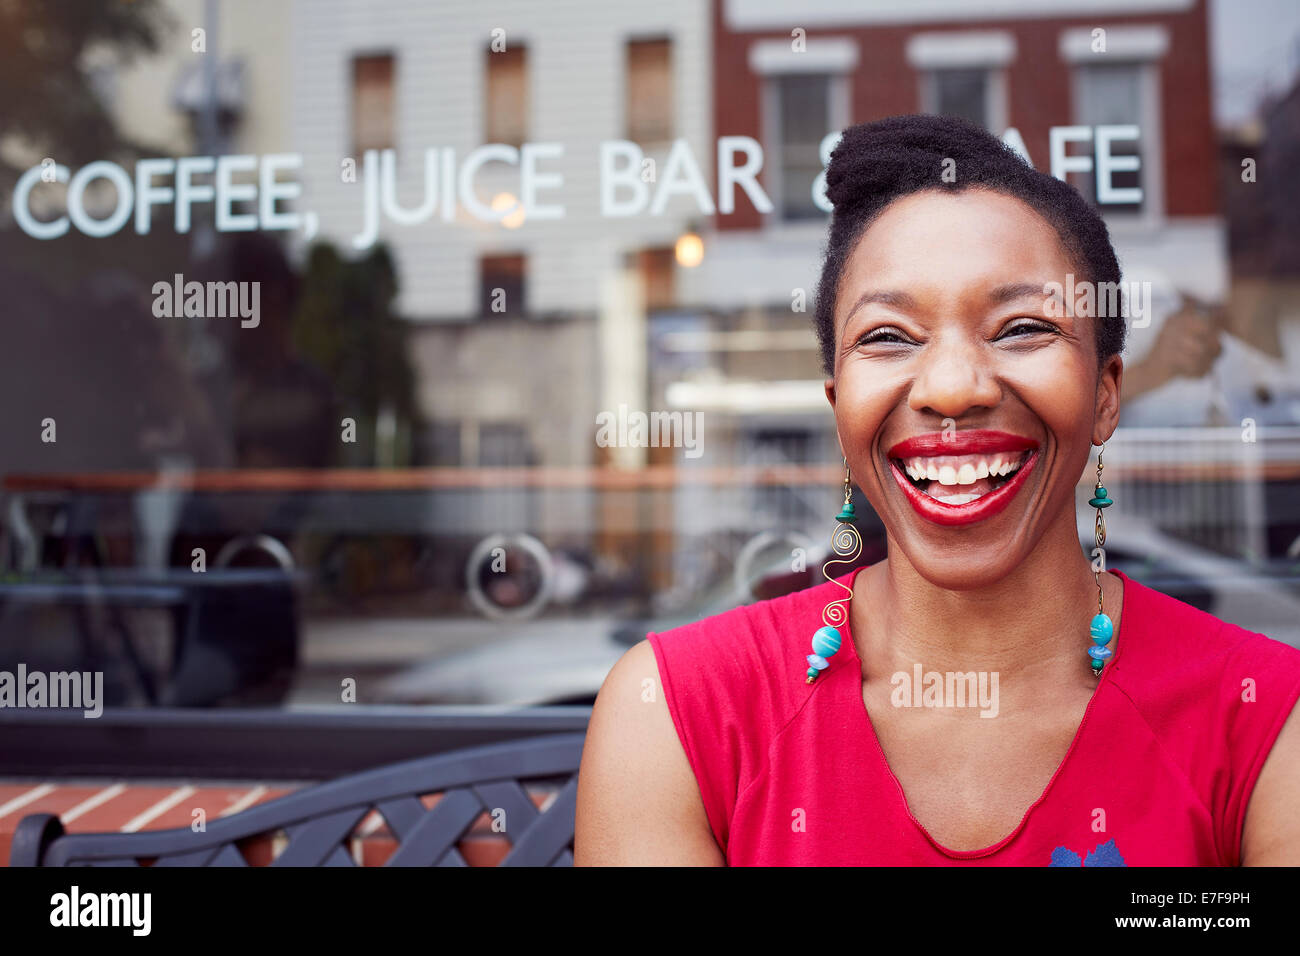 Außerhalb Coffee Shop in Stadt Straße lachende Frau Stockfoto